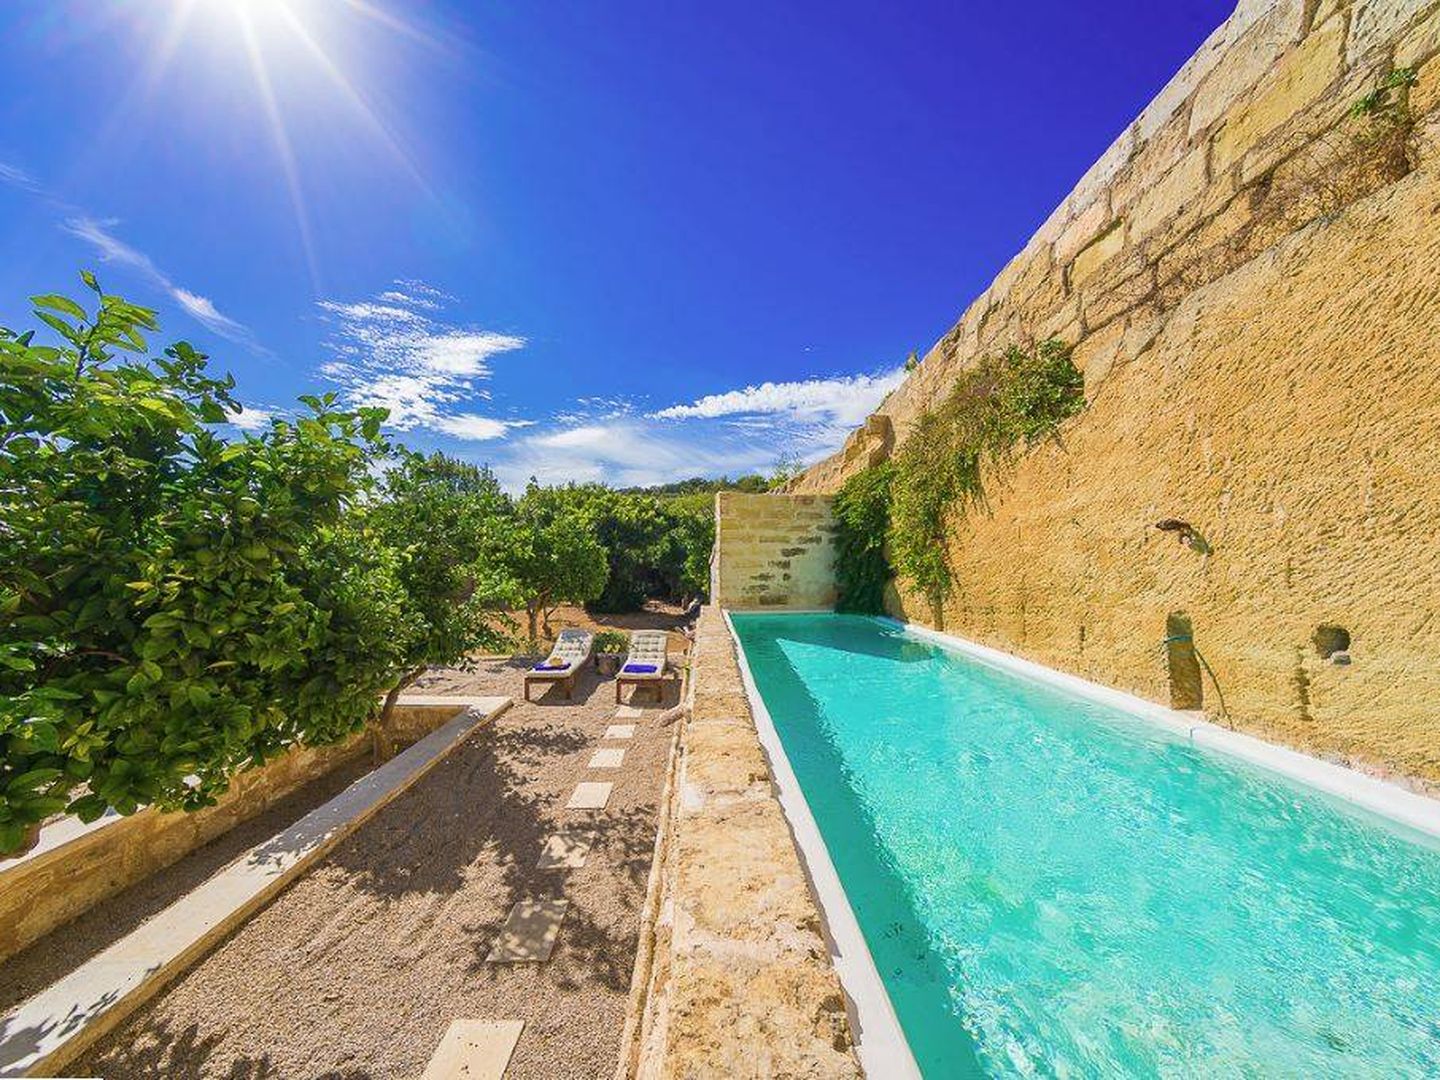 La propiedad también oferta villas como esta en Menorca a 510 euros la noche.